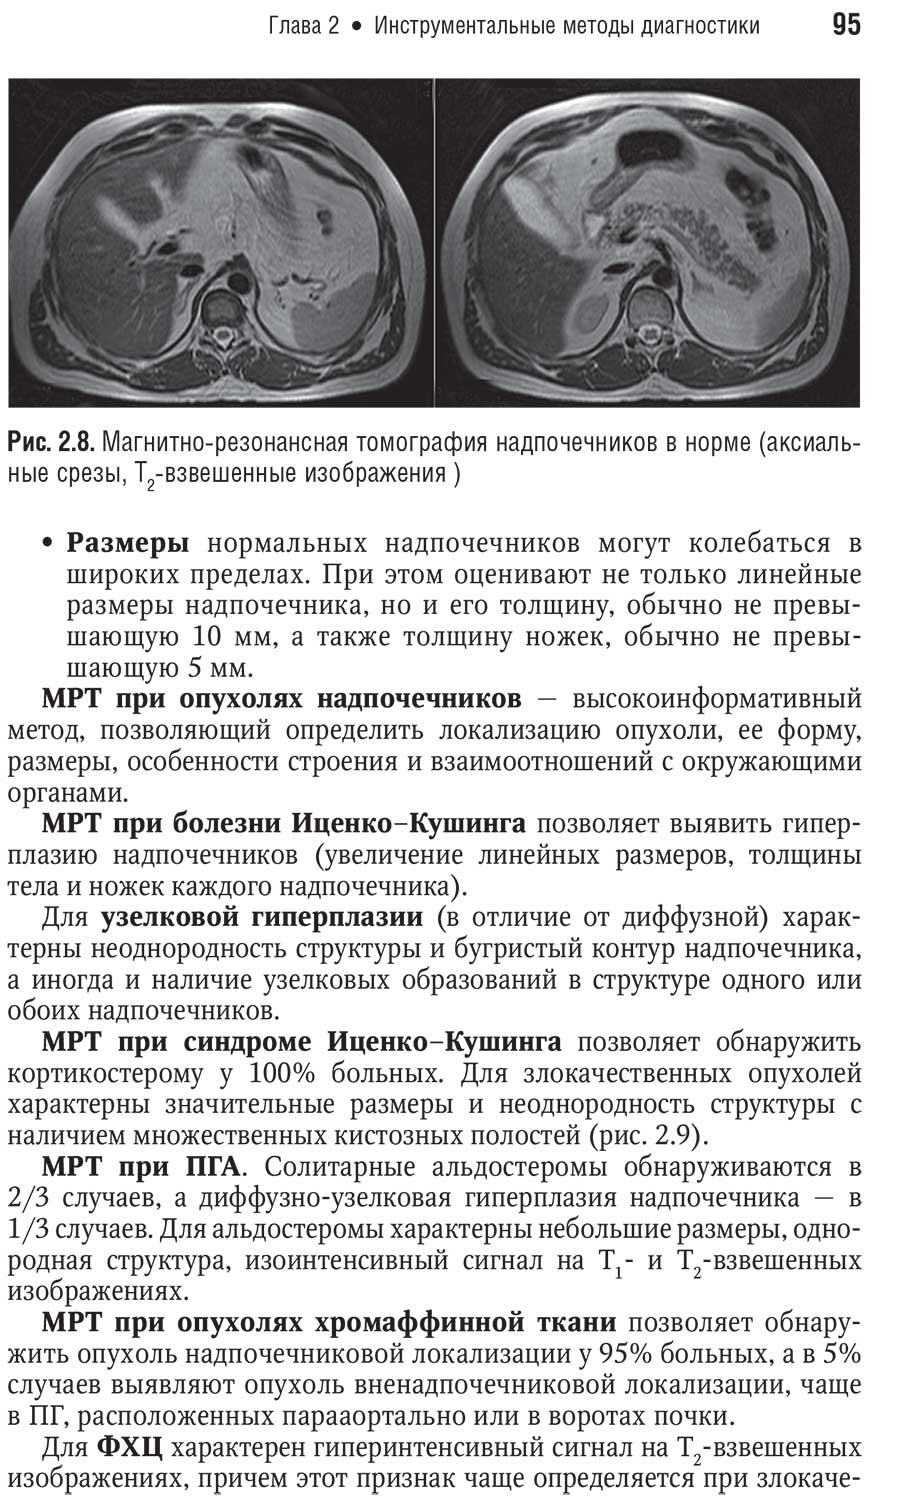 Рис. 2.8. Магнитно-резонансная томография надпочечников в норме